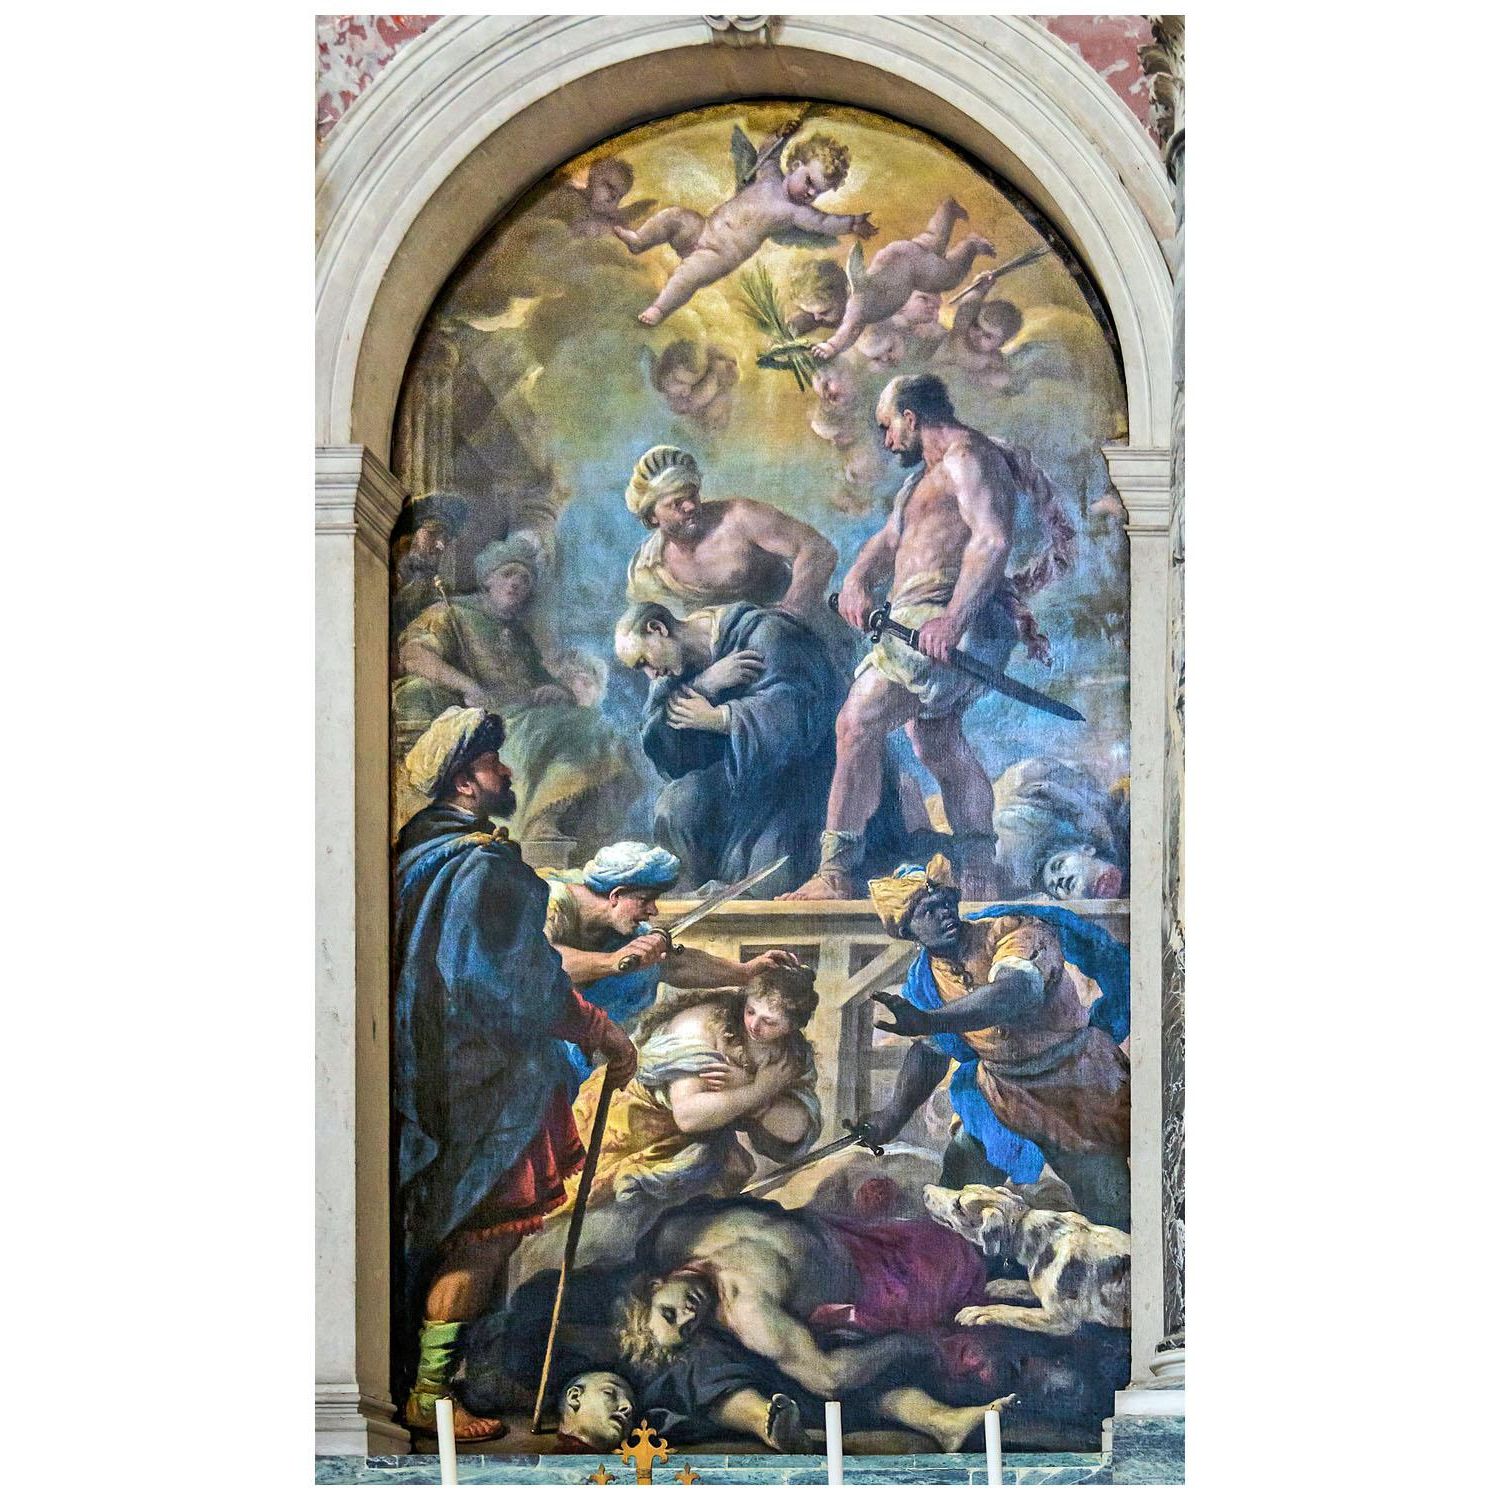 Luca Giordano. Il martirio di San Placido. 1676. Basilica di Santa Giustina Padua